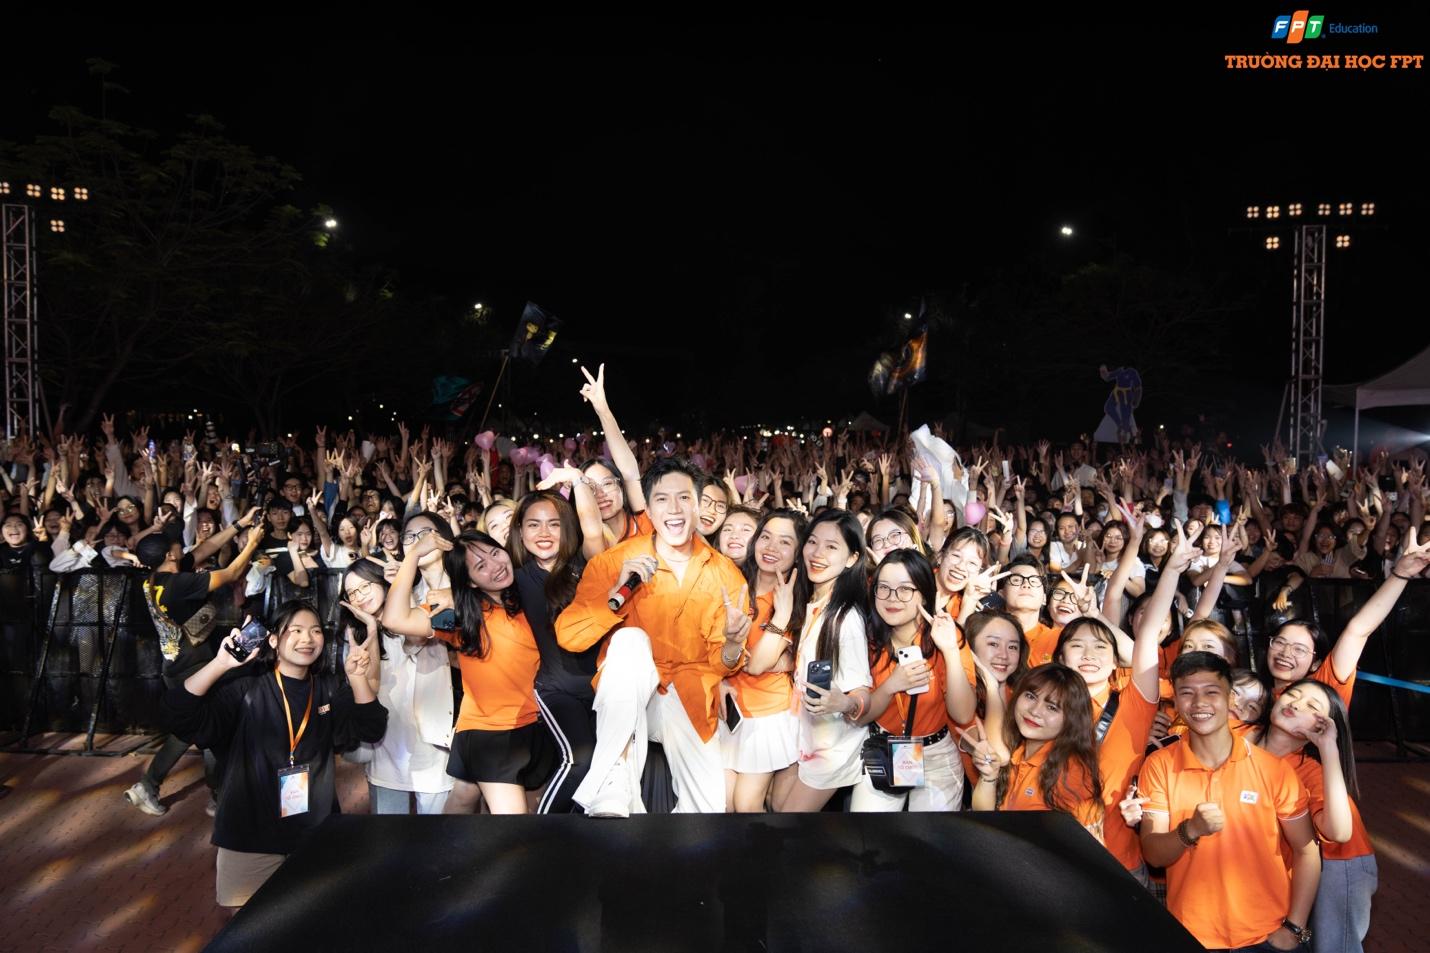 Hoà Minzy, Orange, Anh Tú “cháy” hết mình cùng sinh viên Đại học FPT tại Big Open Day - ảnh 4